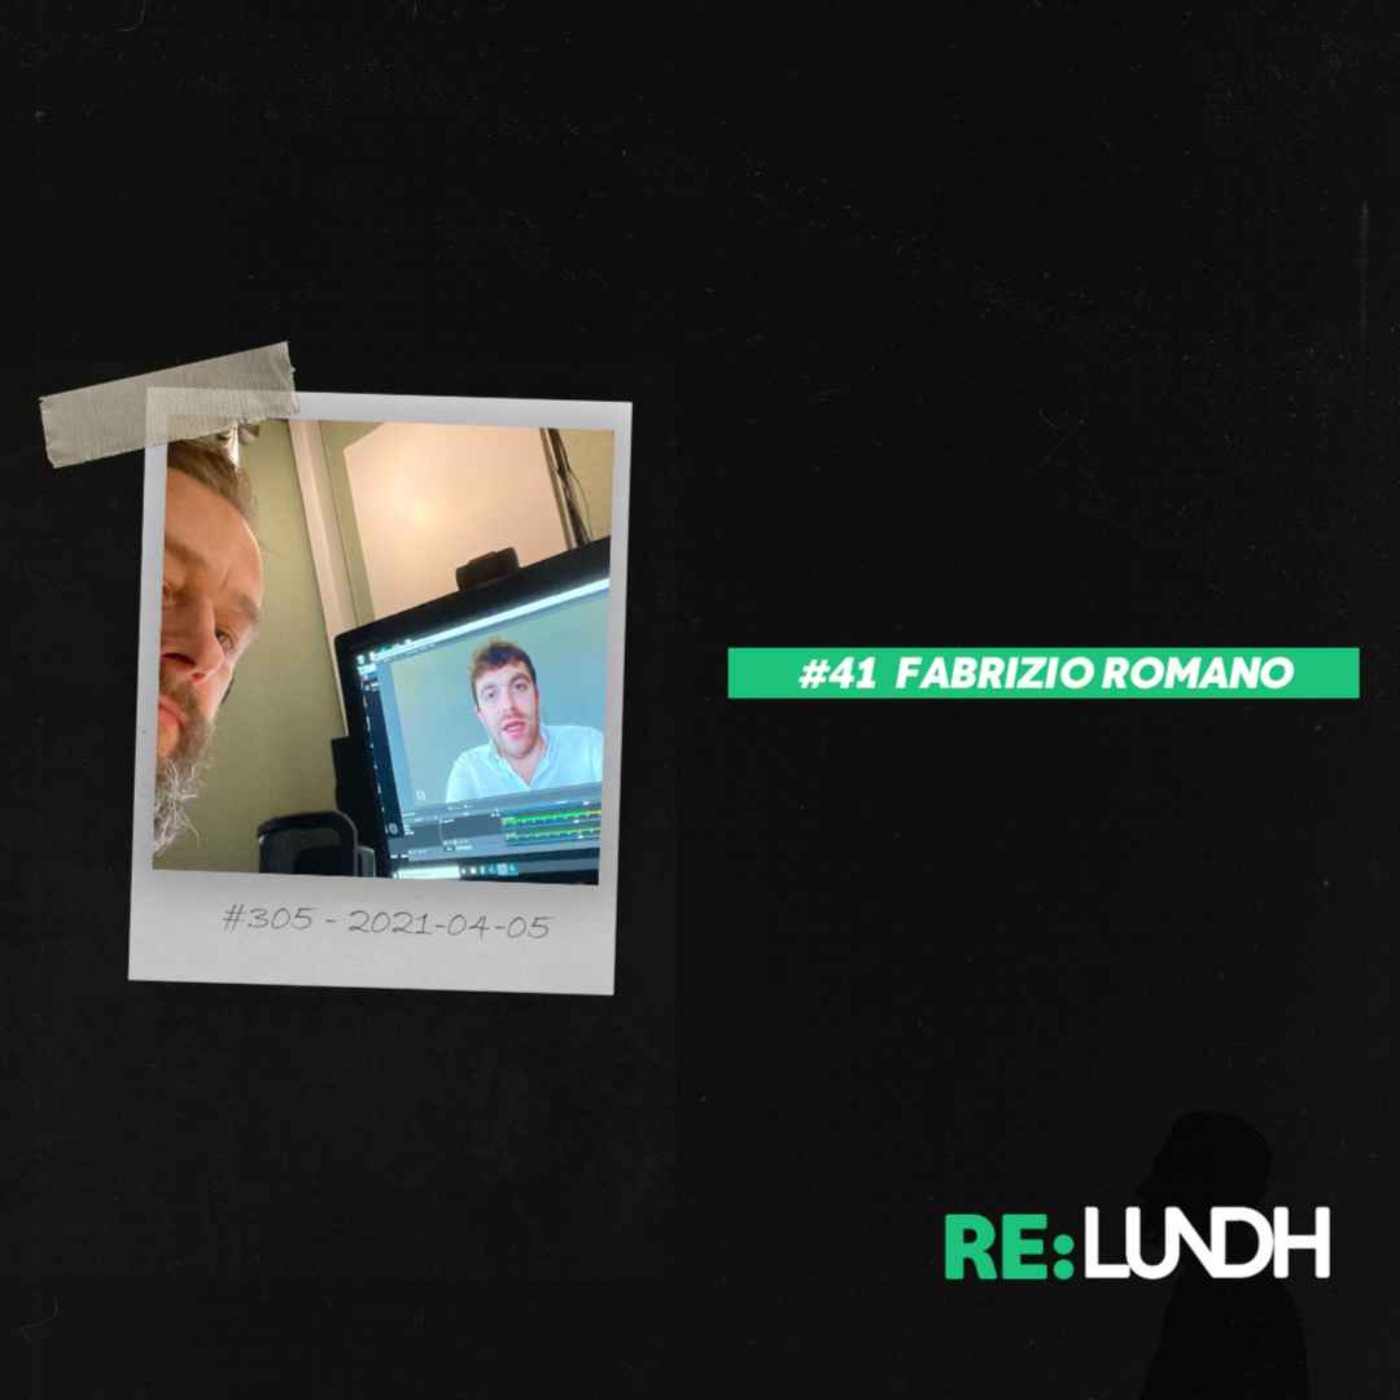 41 Re:Lundh - Fabrizio Romano